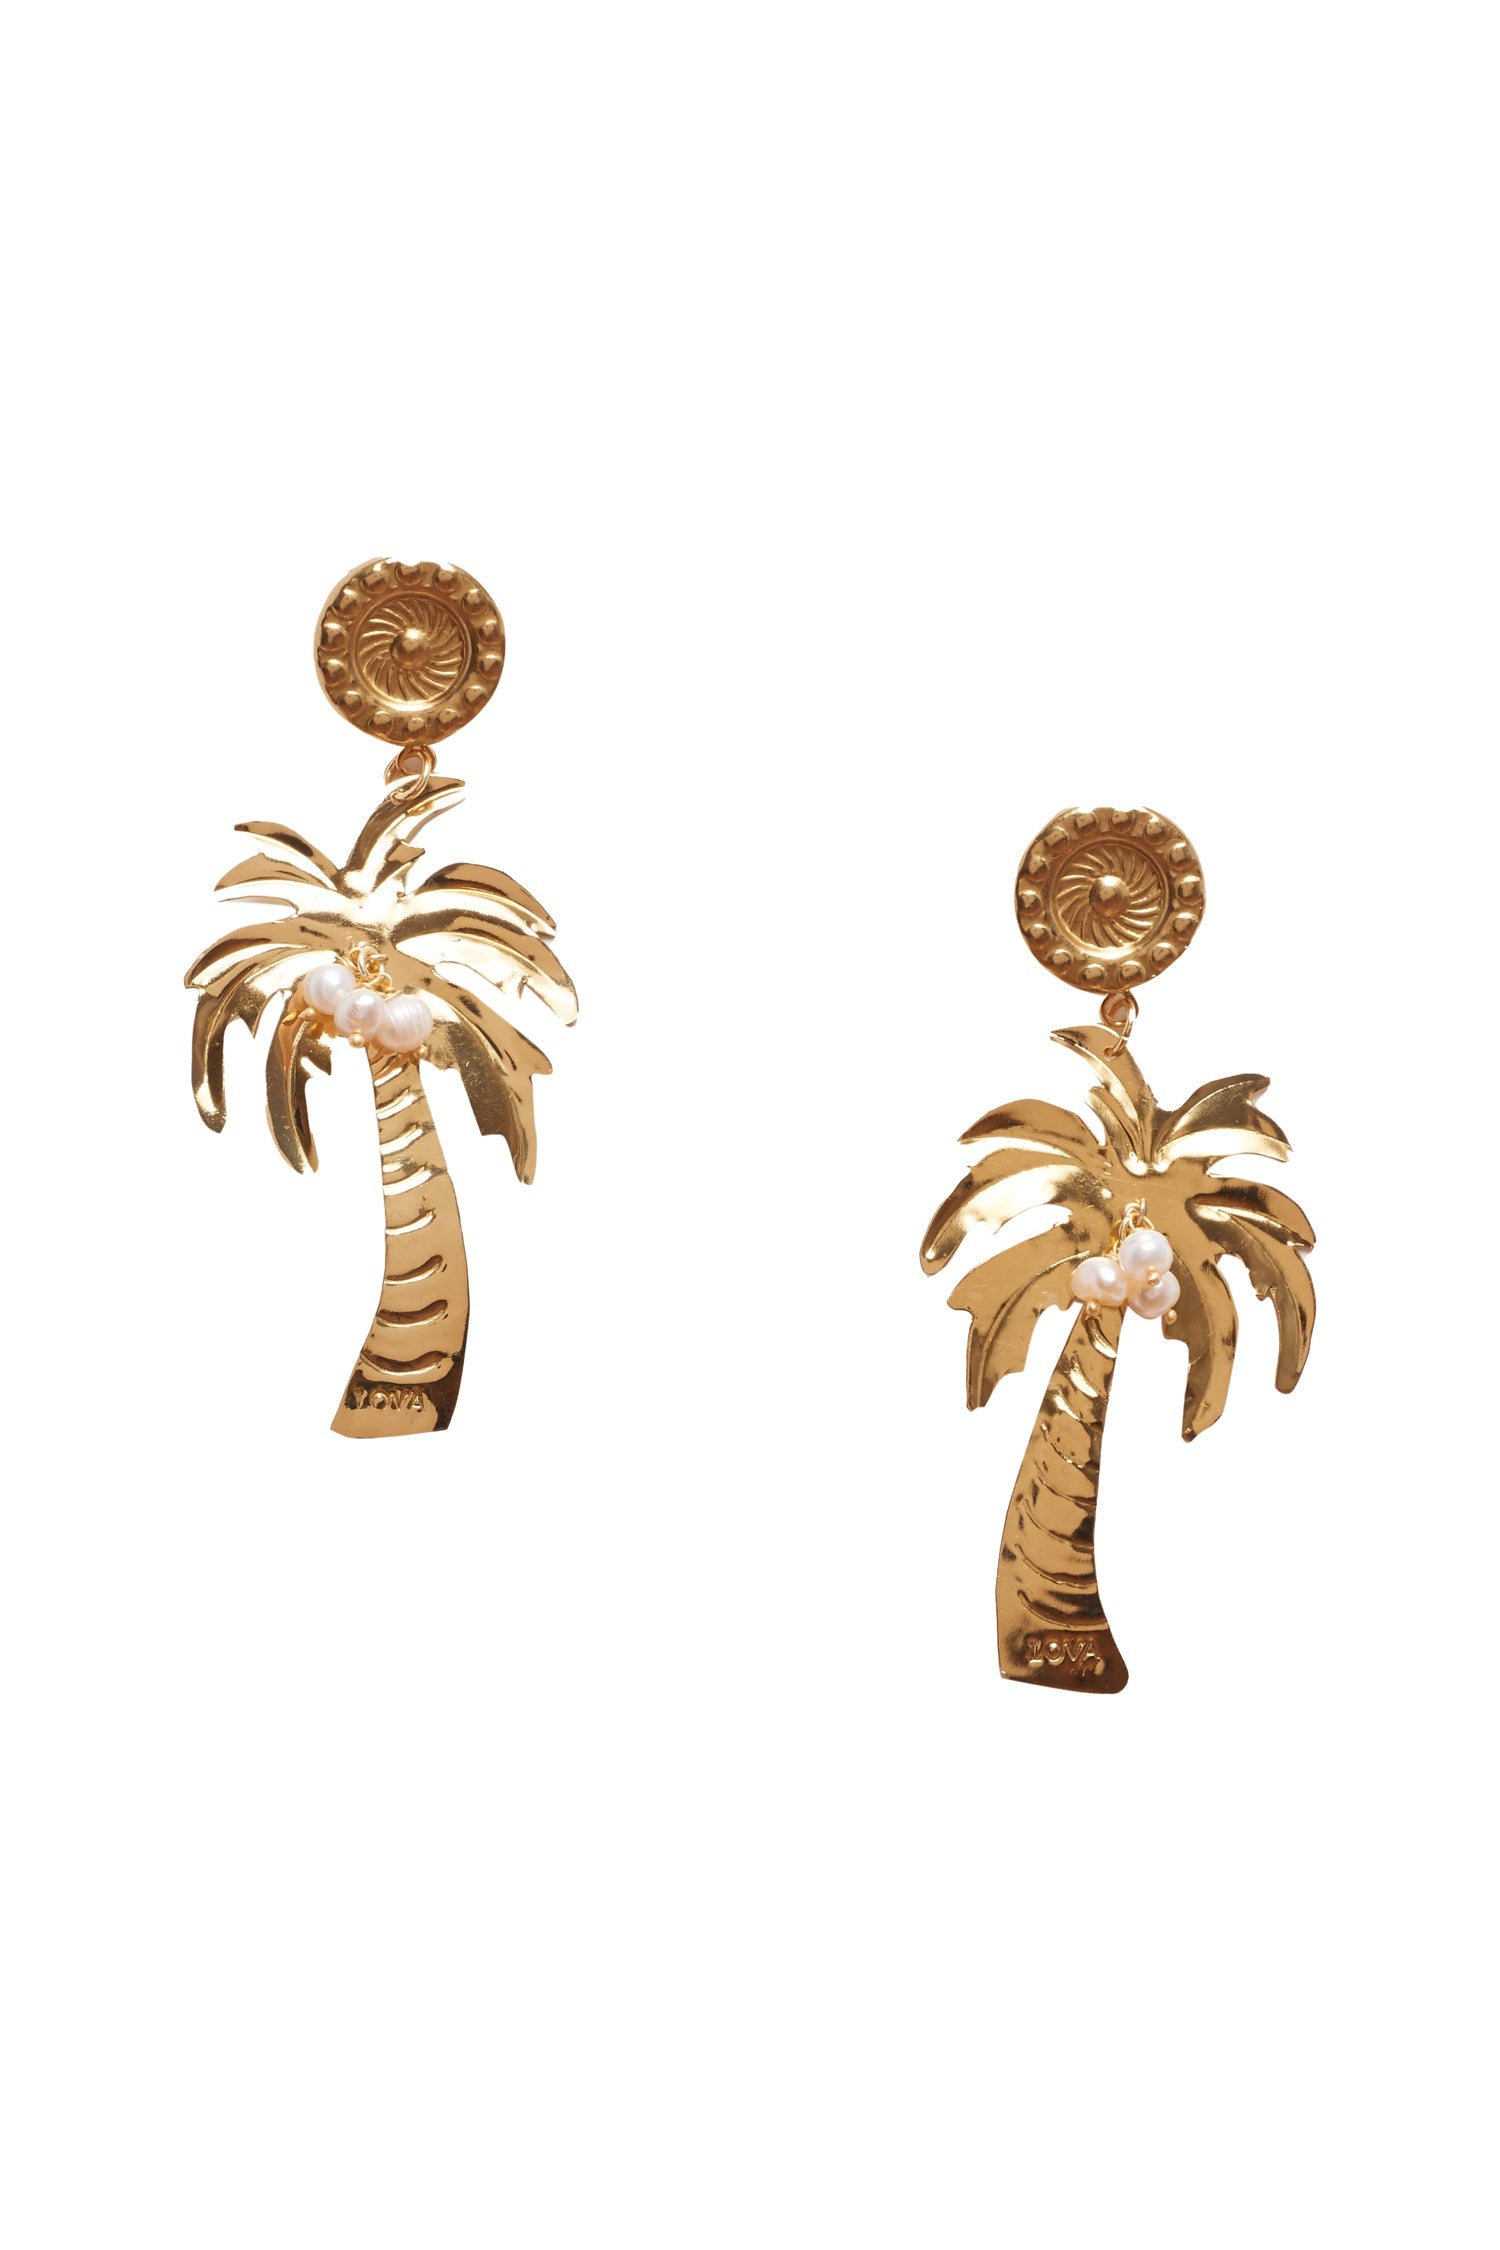 LoveShackFancy x Lova Palm Tree Earrings